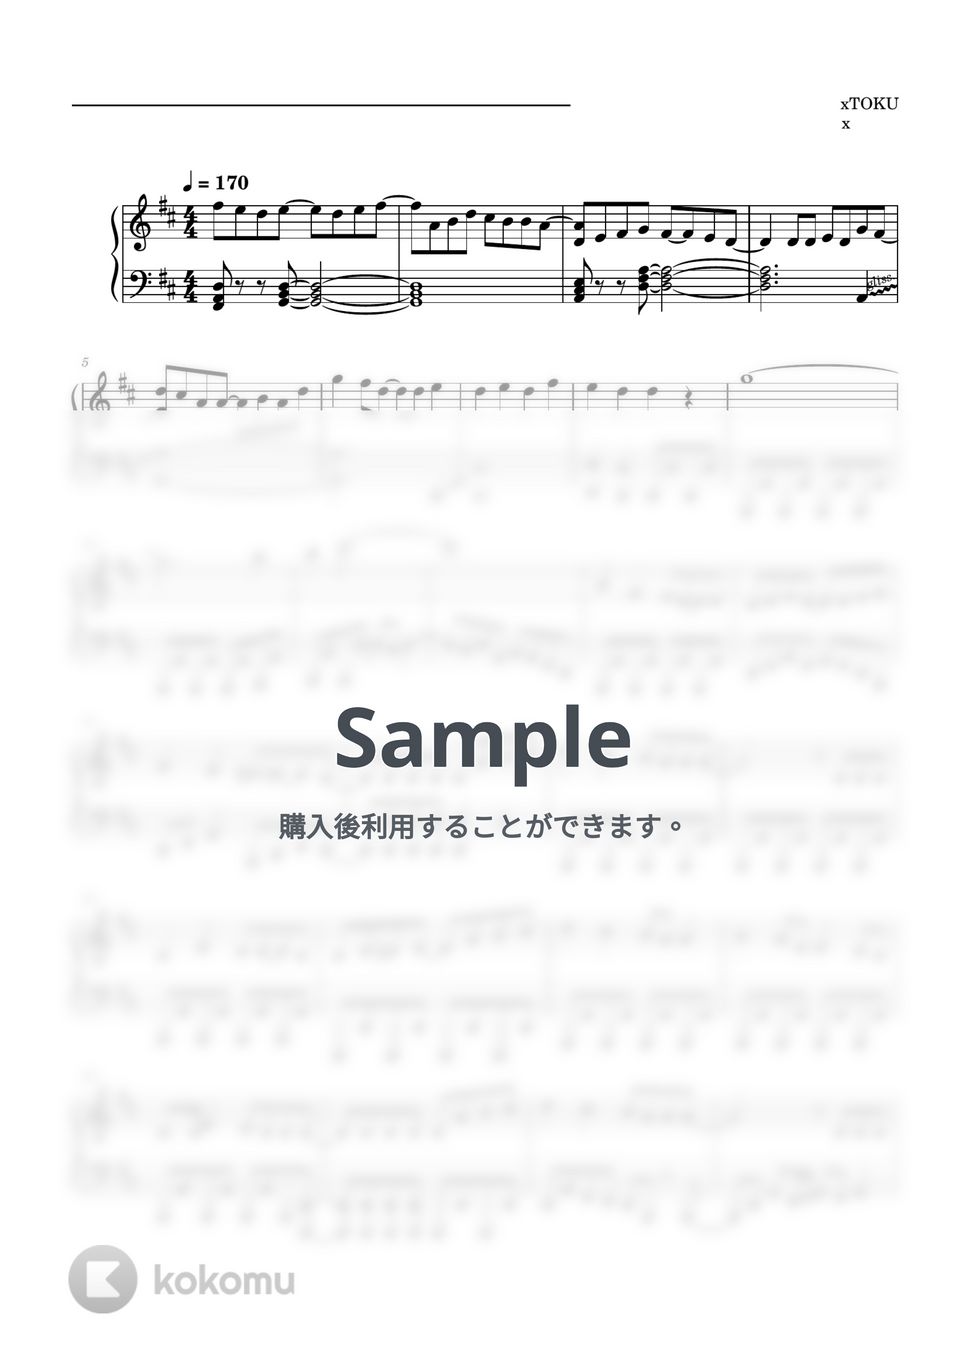 すとぷり - パレードへおかえり (ピアノソロ譜) by 萌や氏